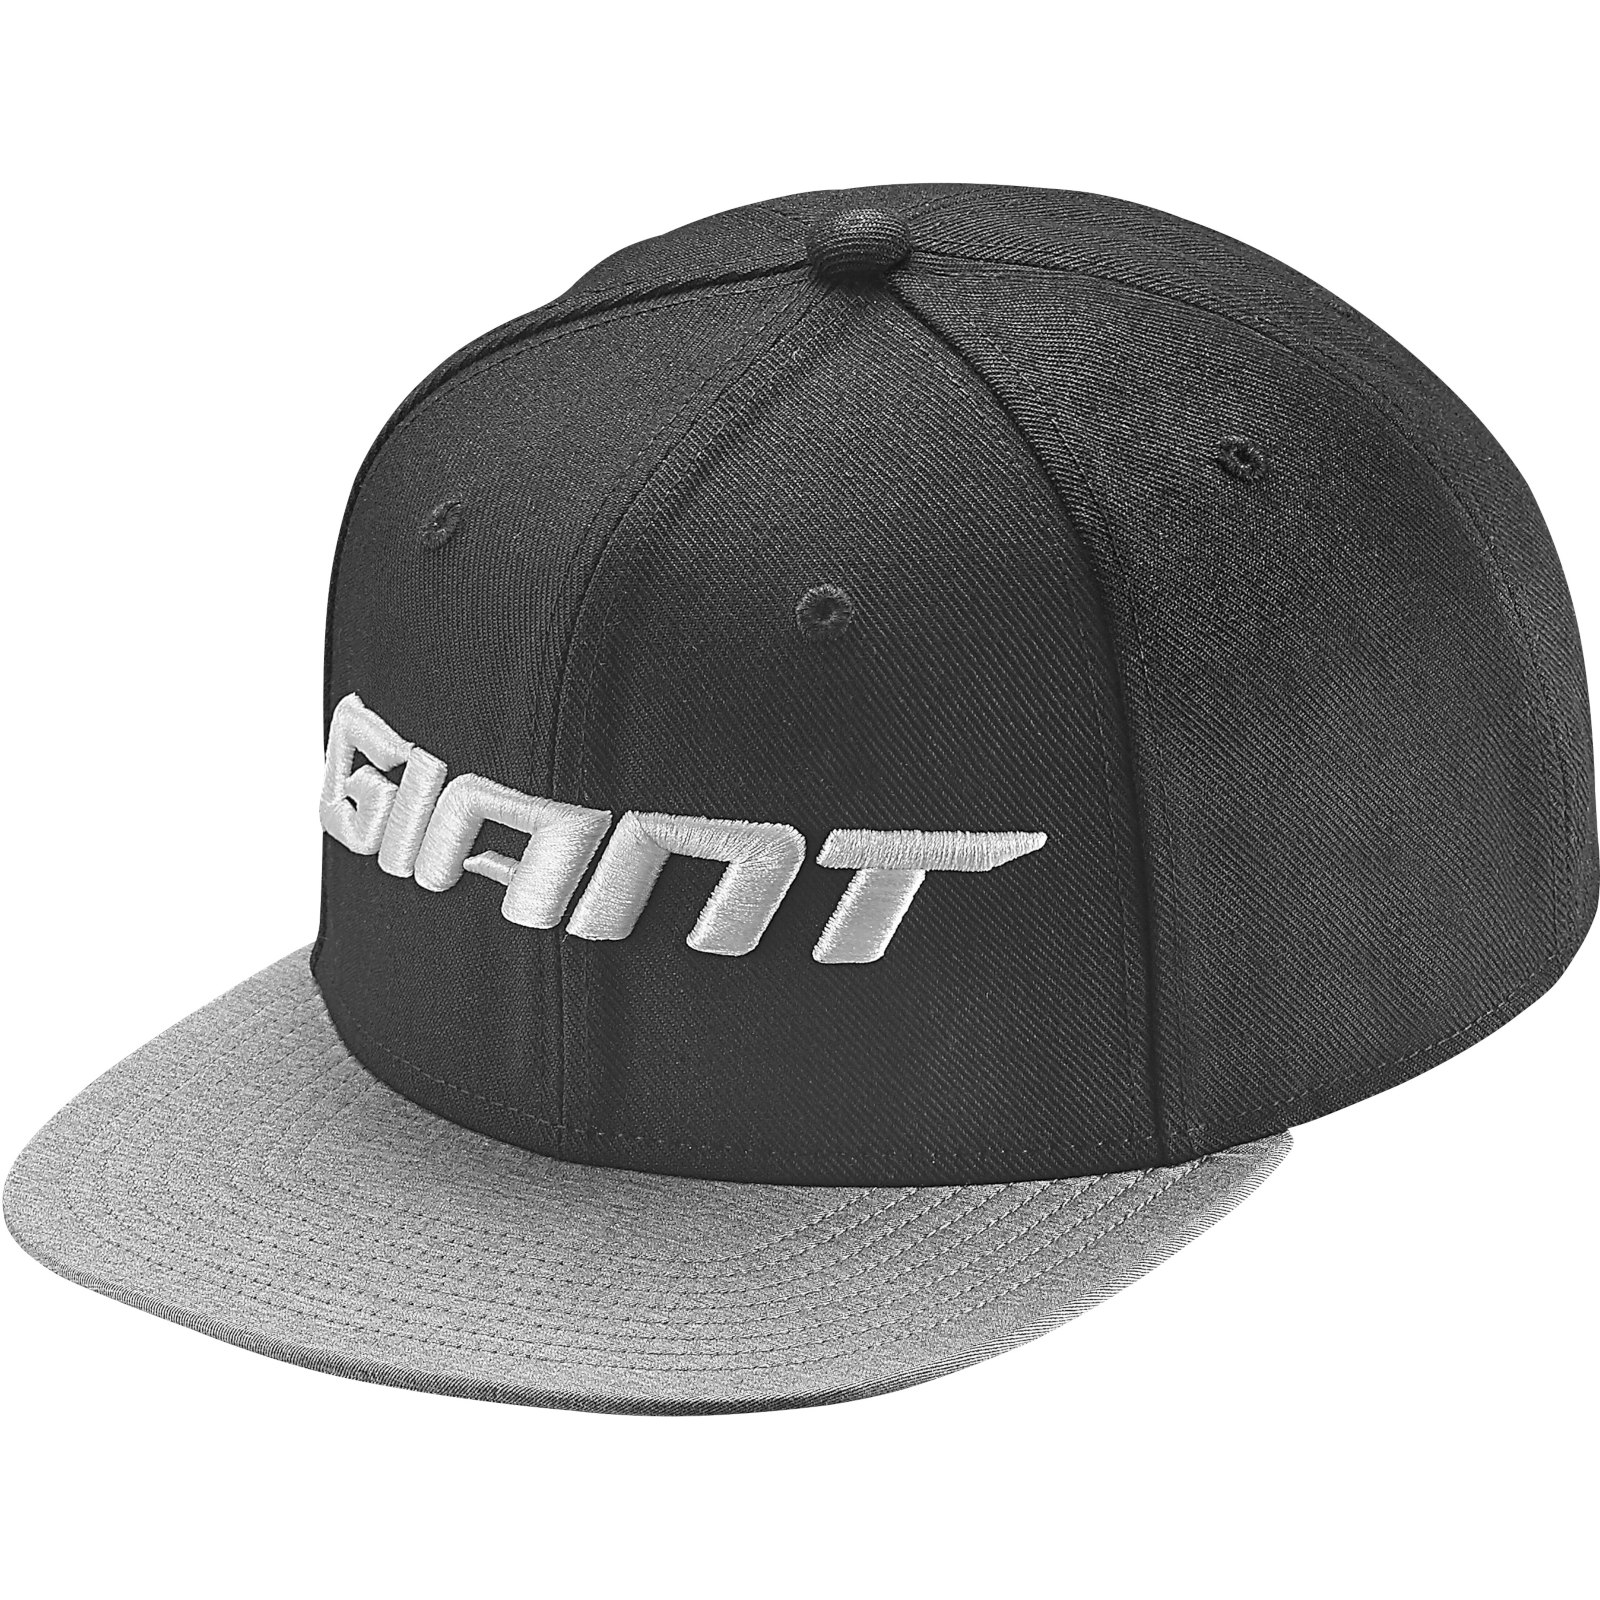 Productfoto van Giant Trucker Cap - black/grey